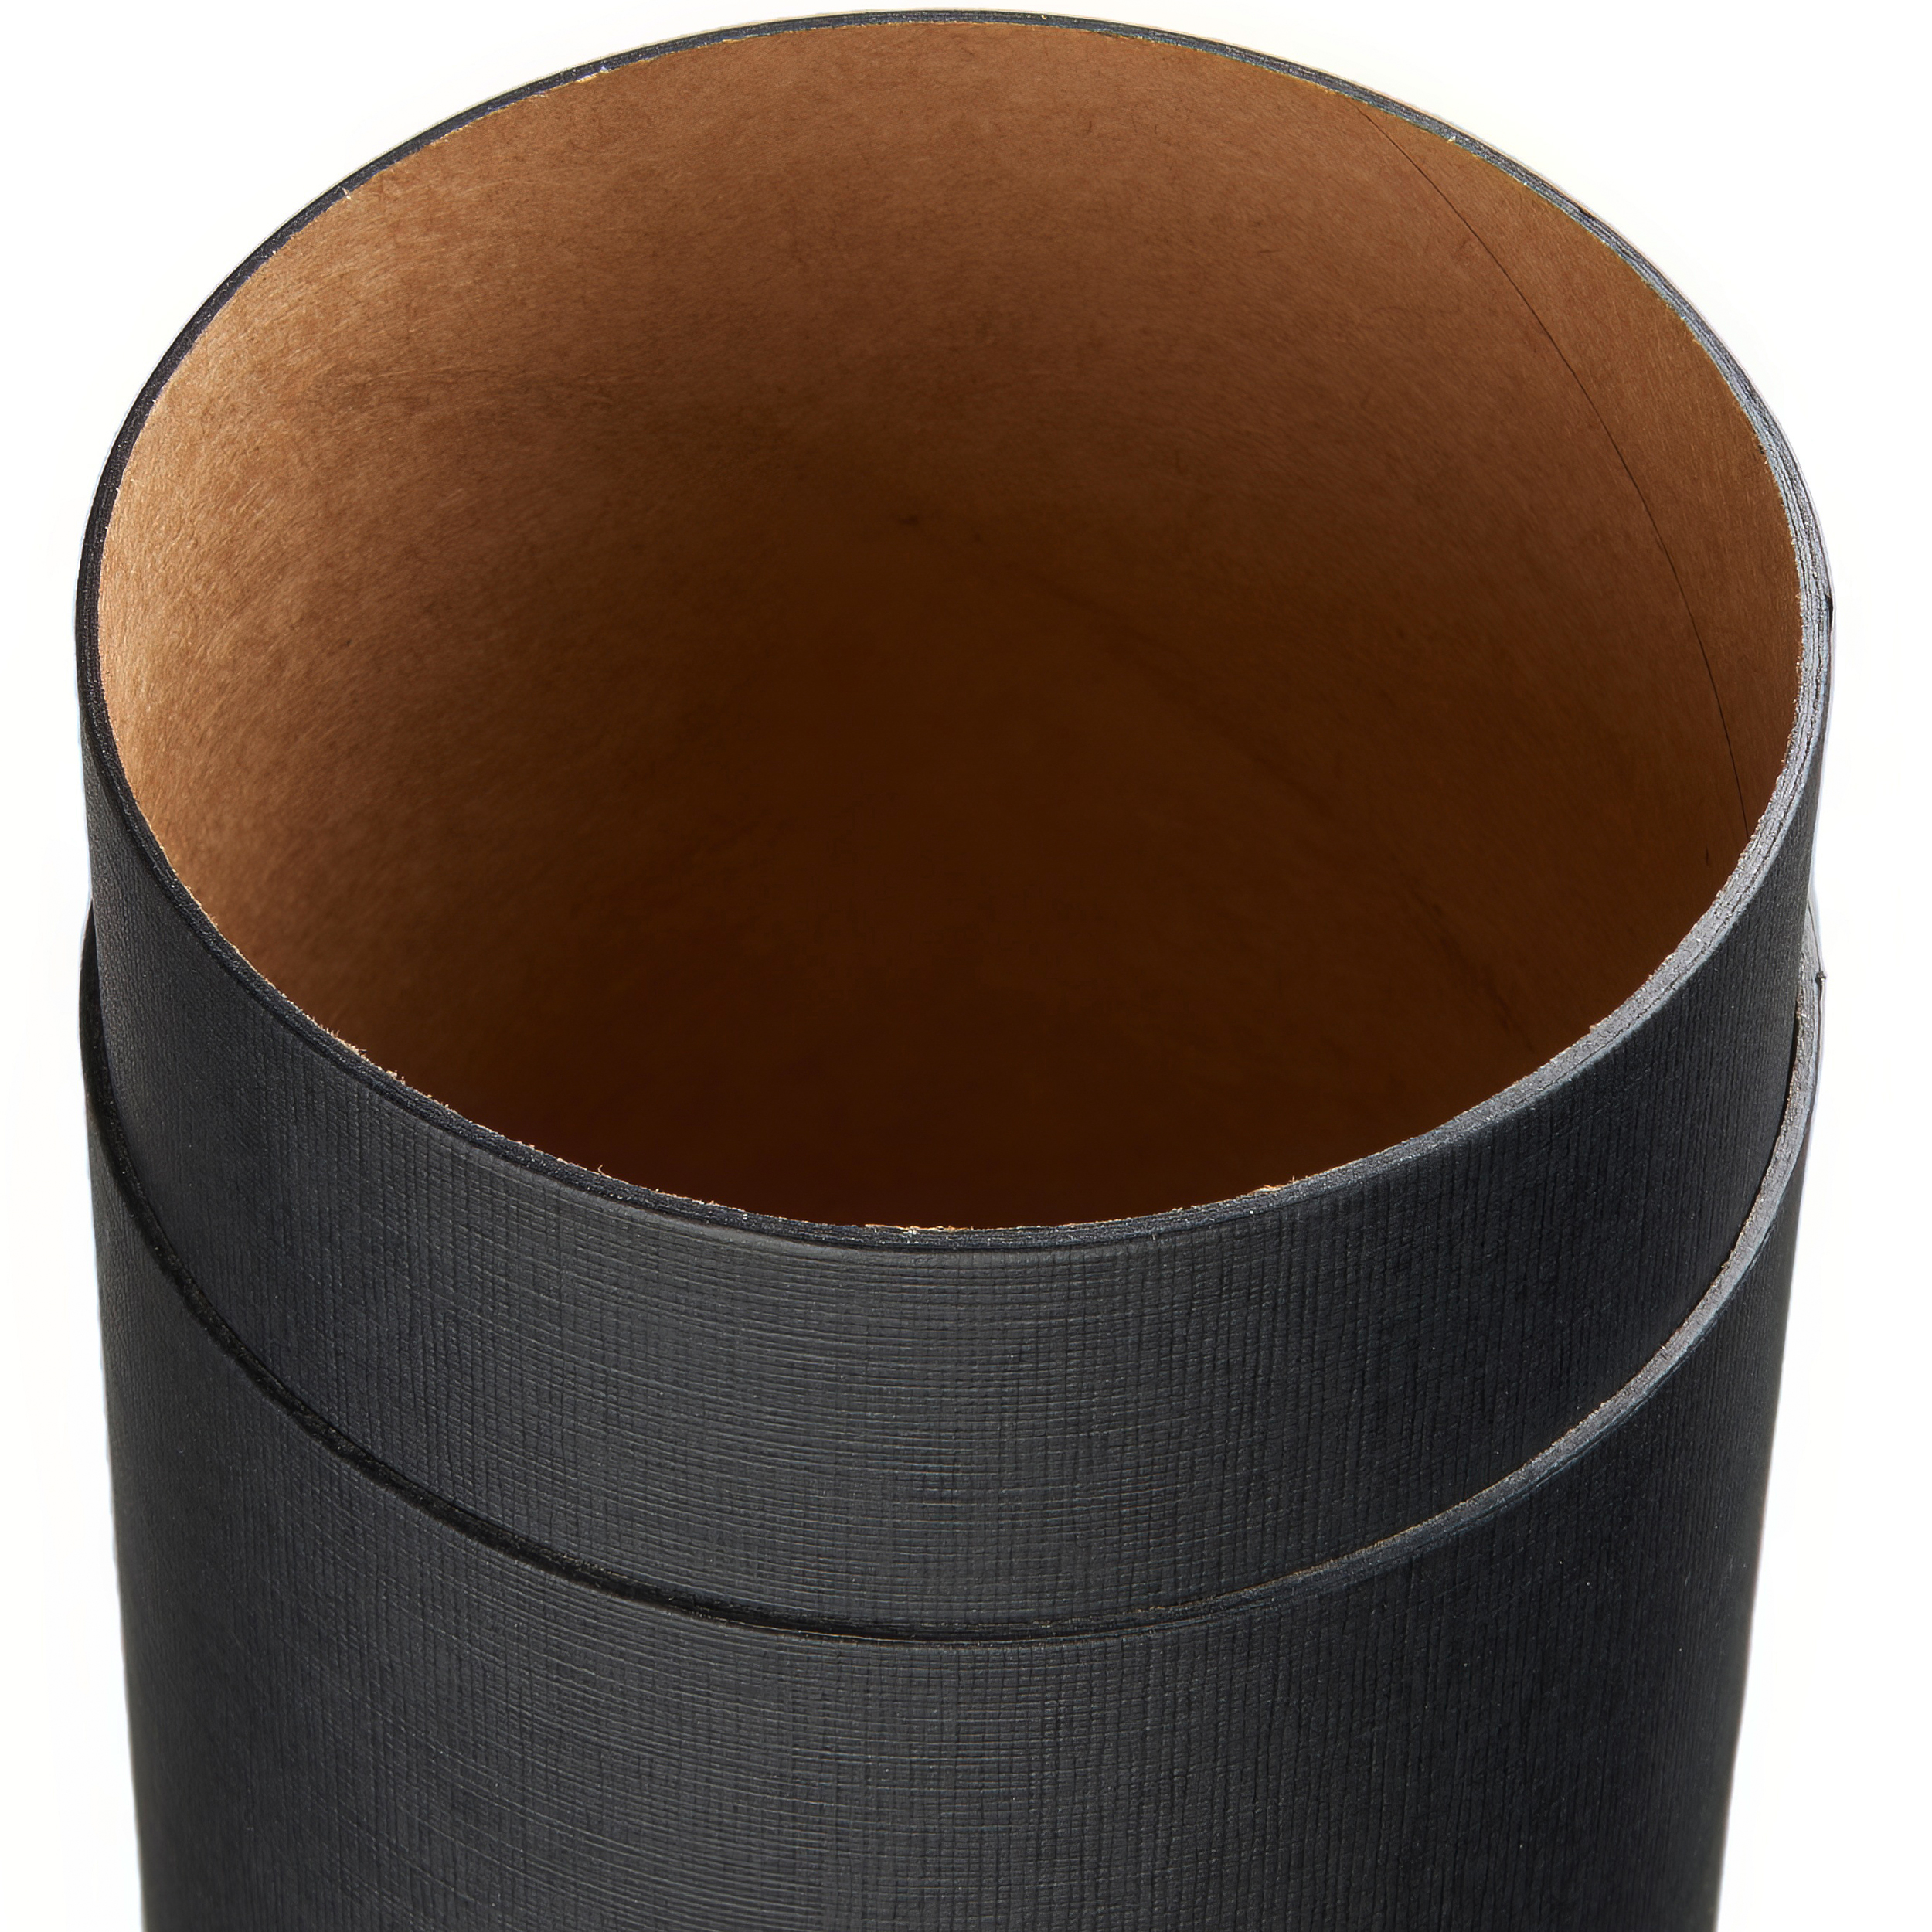 Pappdose schwarz linon | 90 x 32 mm | food grade